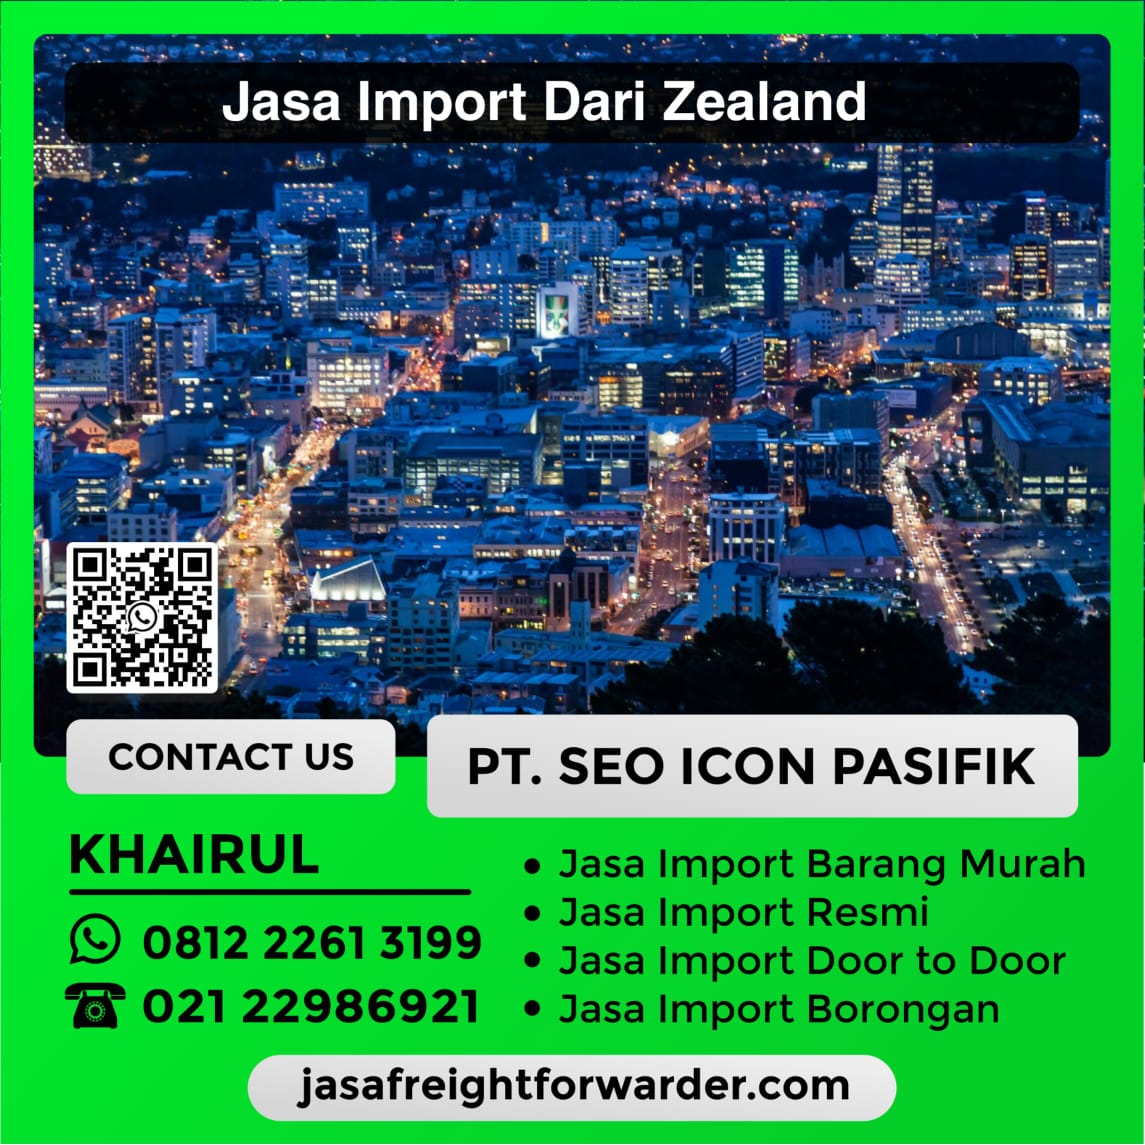 Jasa-Import-Dari-Zealand.jpeg